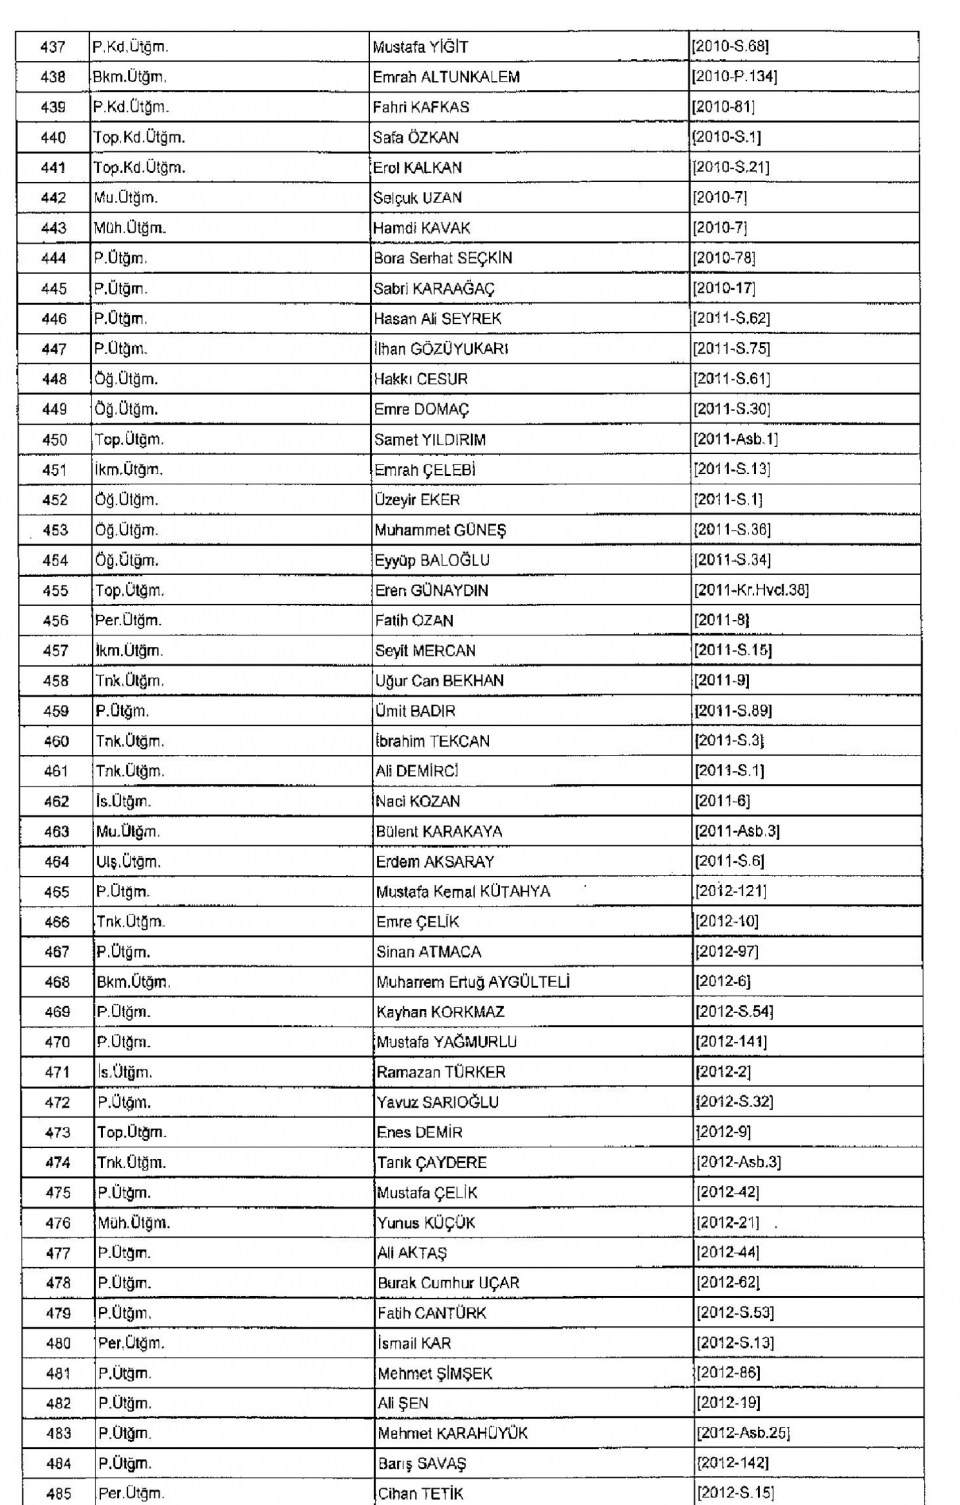 Kamudan ihraç edilenlerin isim isim listesi 19